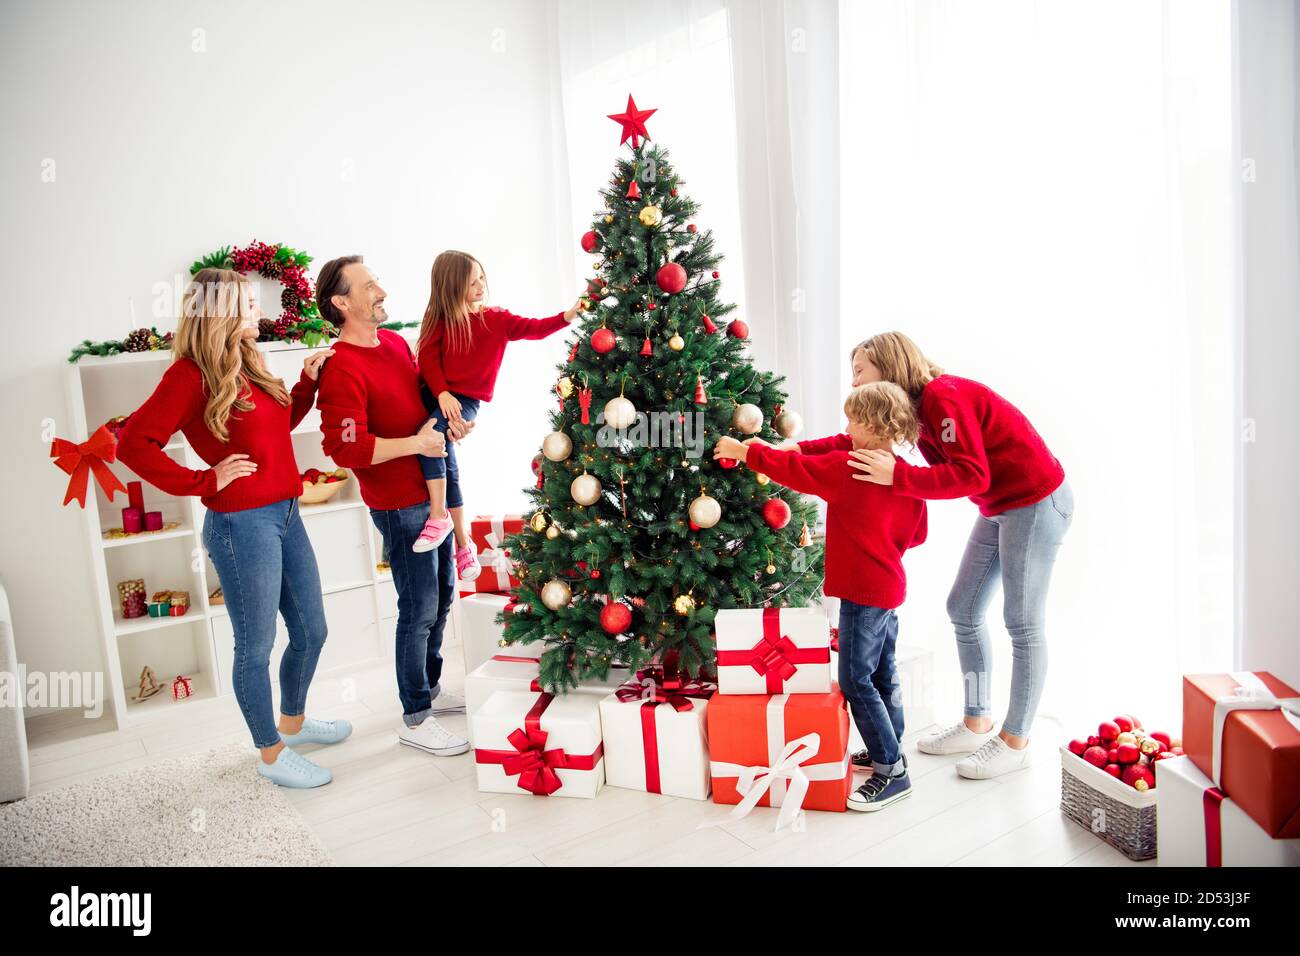 Foto der ganzen großen Familie fünf Leute treffen drei kleine Kinder Papa halten Tochter schmücken x-Mas Baum Spielzeug Bälle Stern Tragen Sie roten Pullover Jeans zu Hause Stockfoto